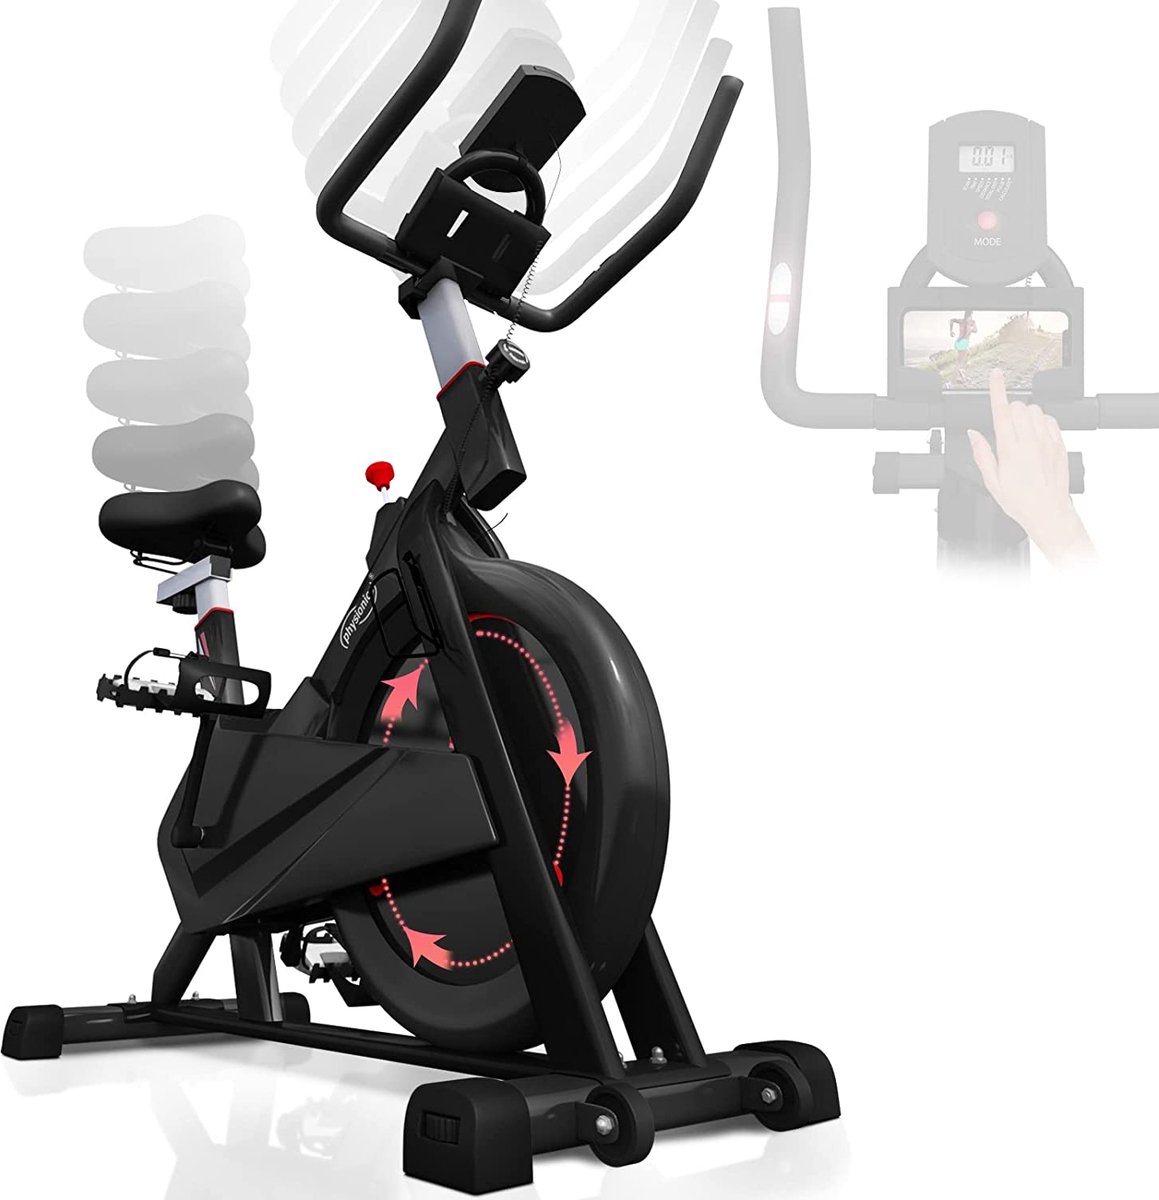 Hometrainer - Hometrainer fiets - Fitnessfiets - Hometrainers fitness - 5 weerstandniveaus - Met hartslagmeter - Zwart